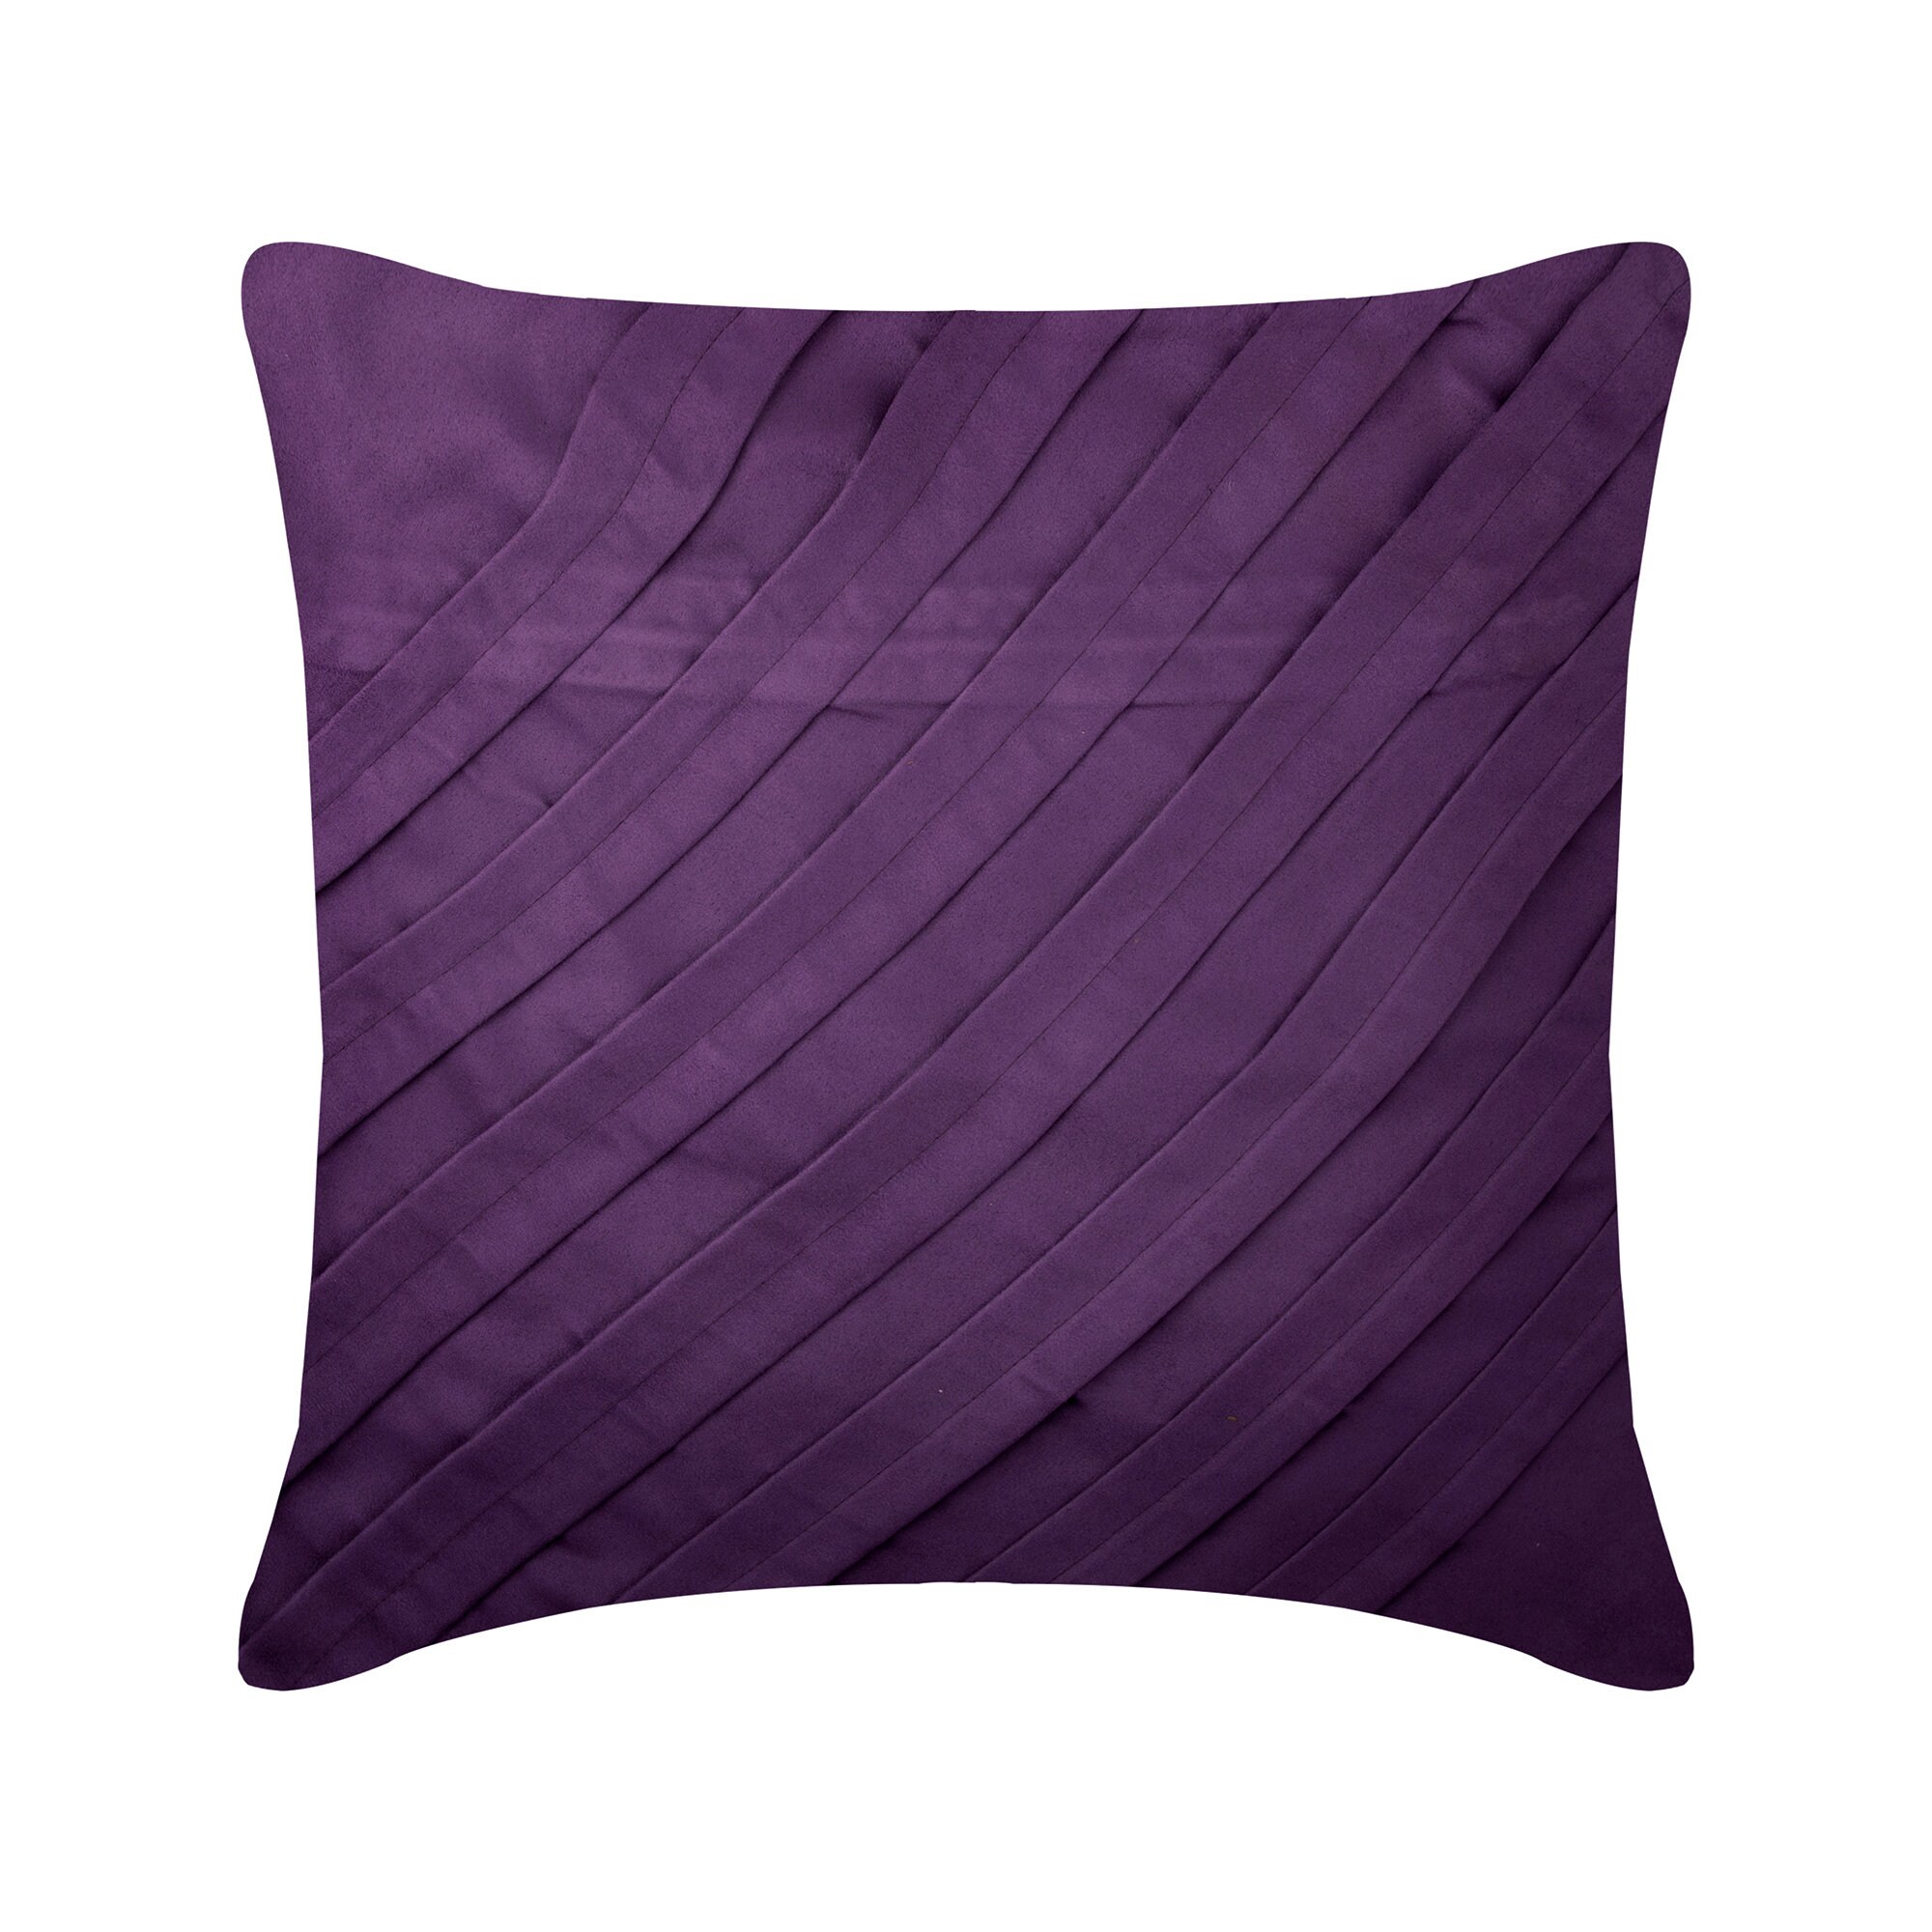 Purple Toss Throw Pillow Luxury 14"x14" Plummet Silk Striped